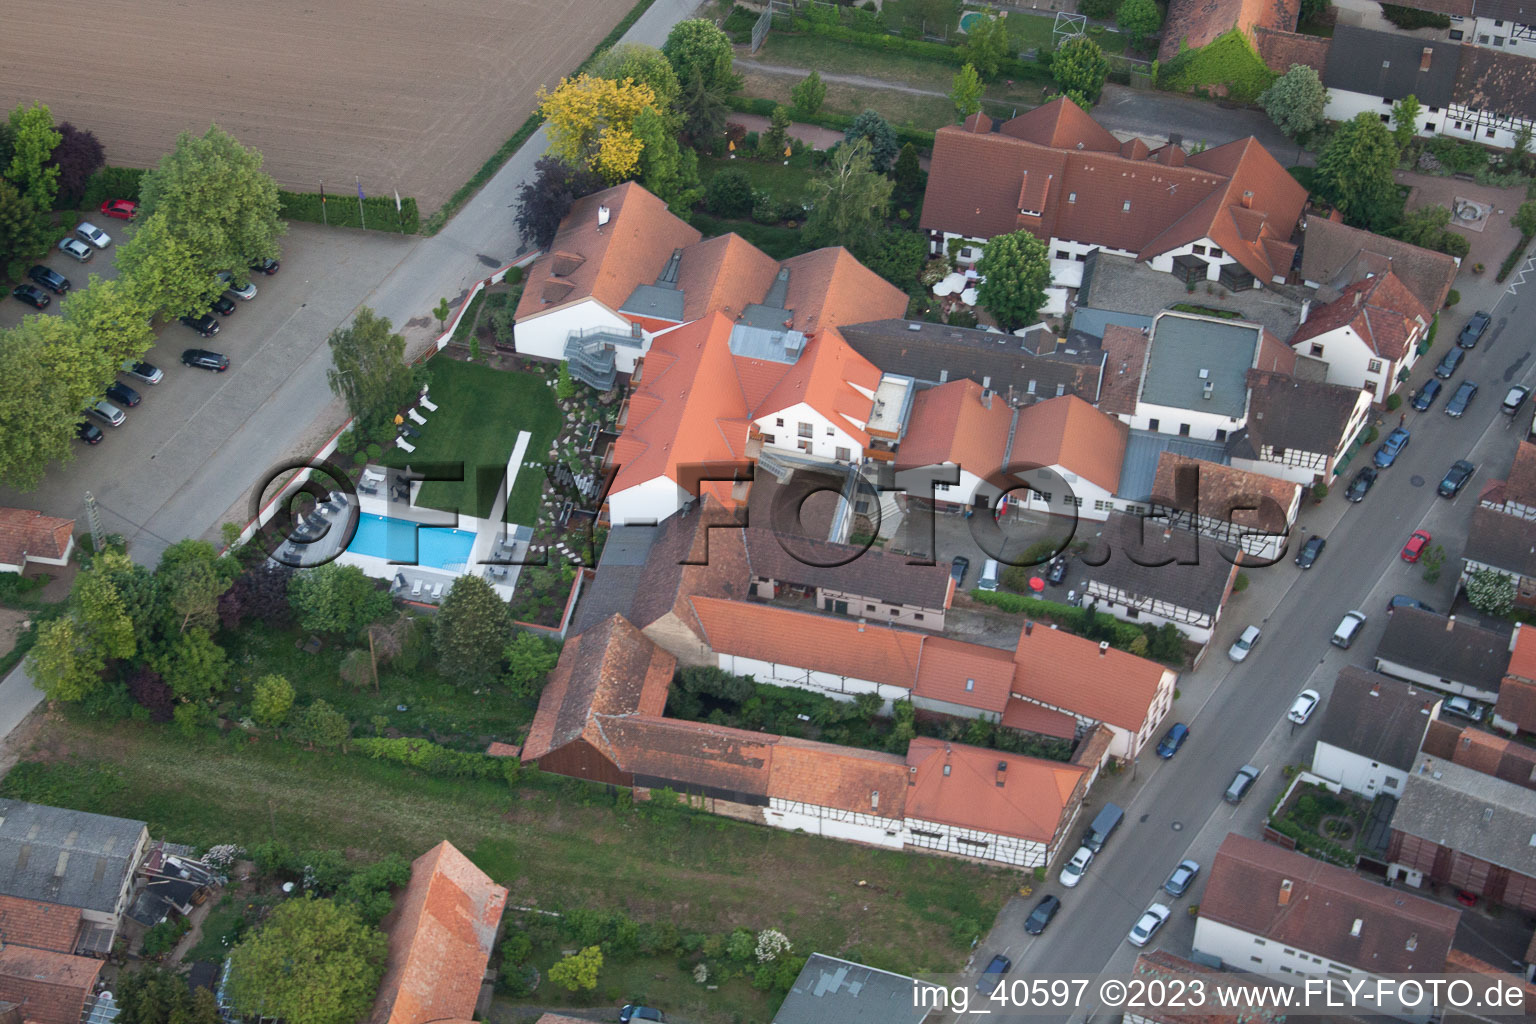 Quartier Hayna in Herxheim bei Landau/Pfalz dans le département Rhénanie-Palatinat, Allemagne vu d'un drone